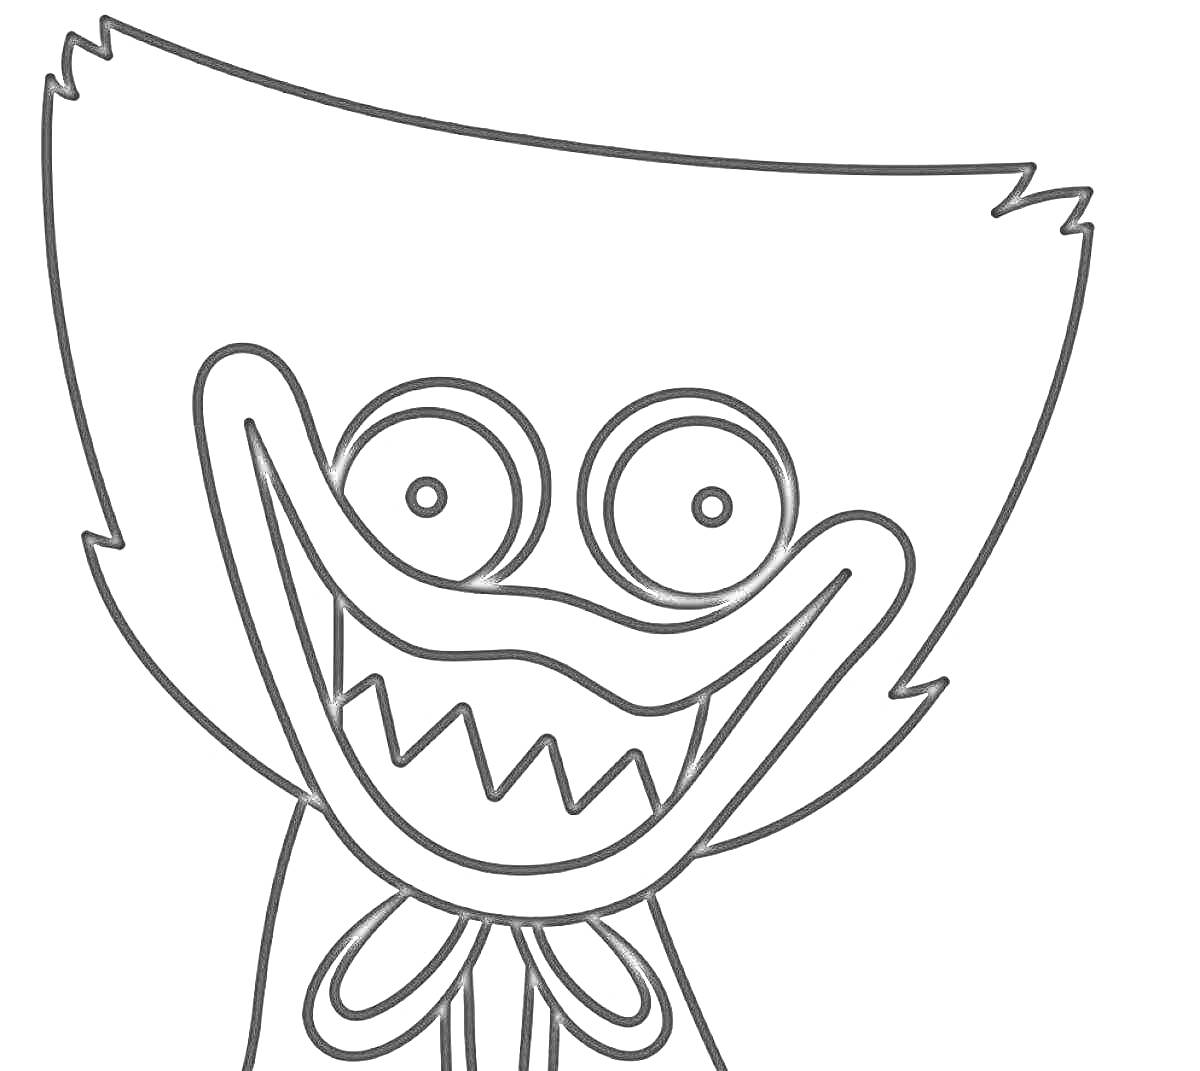 Лицо персонажа с большими круглыми глазами и острыми зубами, в шарфе